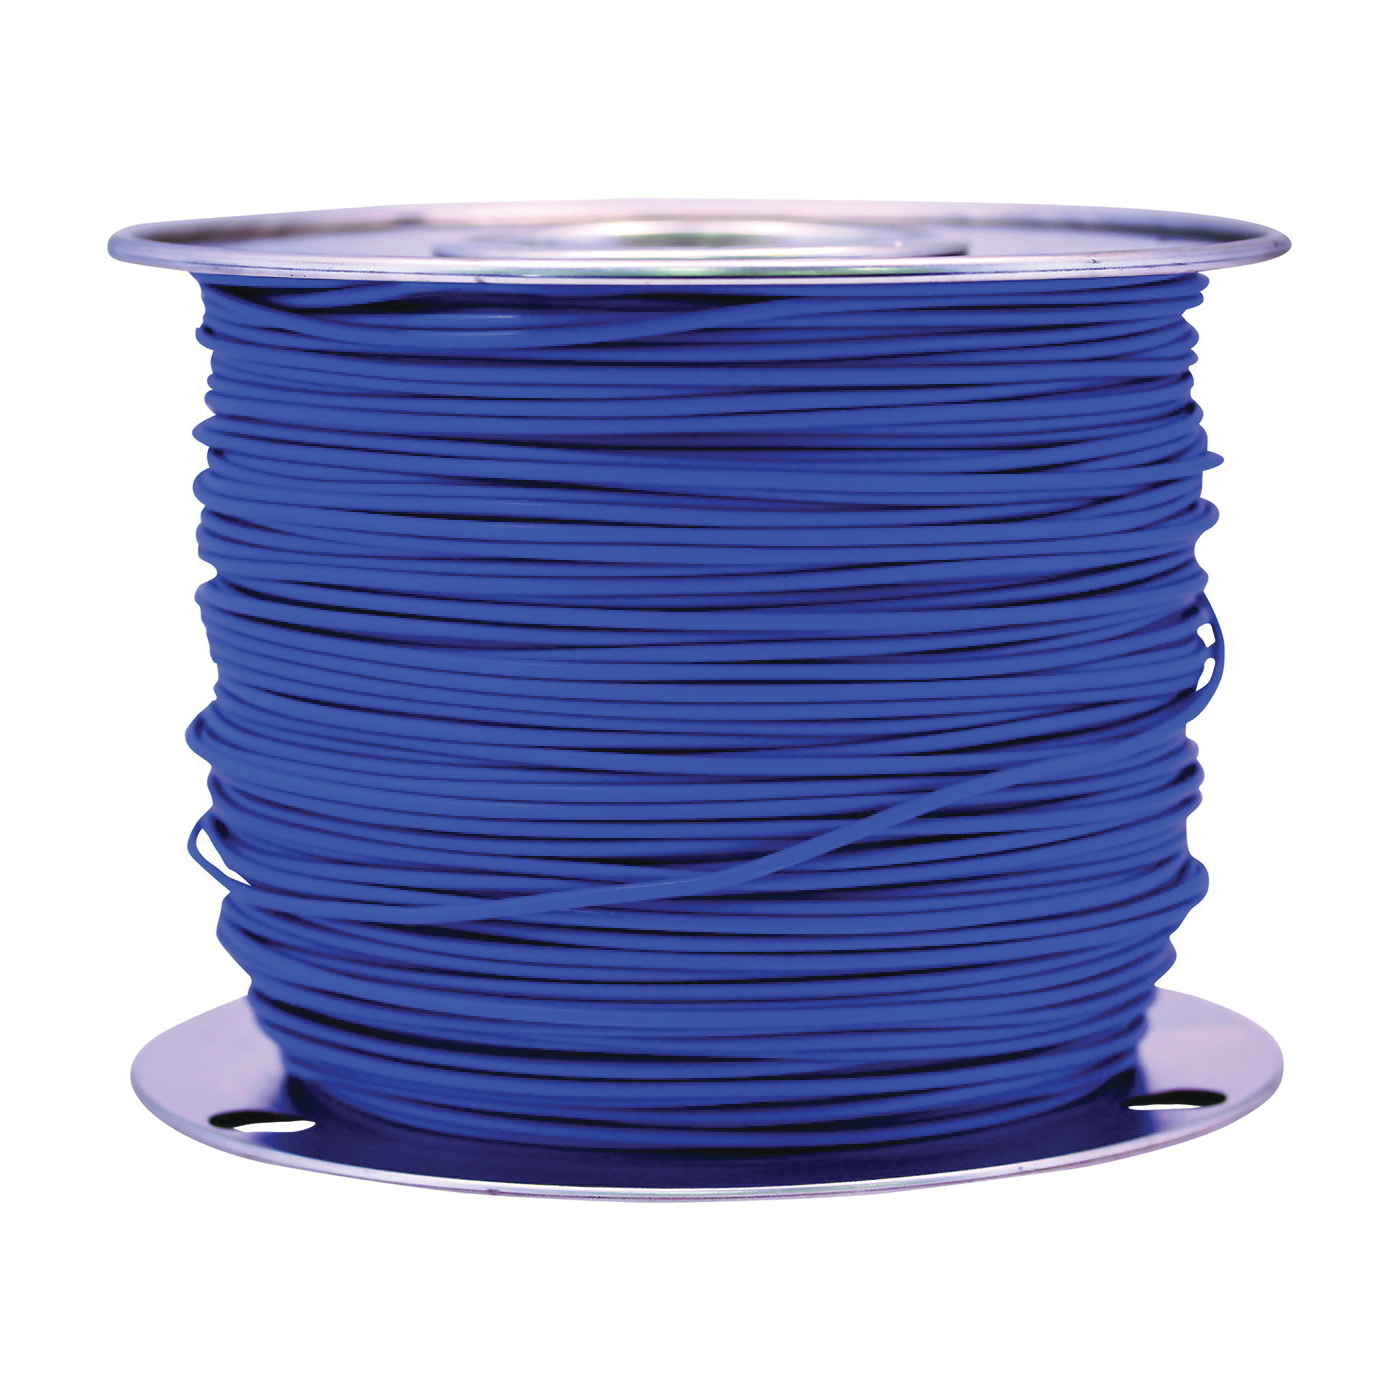 CCI 55671623 Primary Wire, 12 AWG Wire, 1-Conductor, 60 VDC, Copper Conductor, Blue Sheath - 1